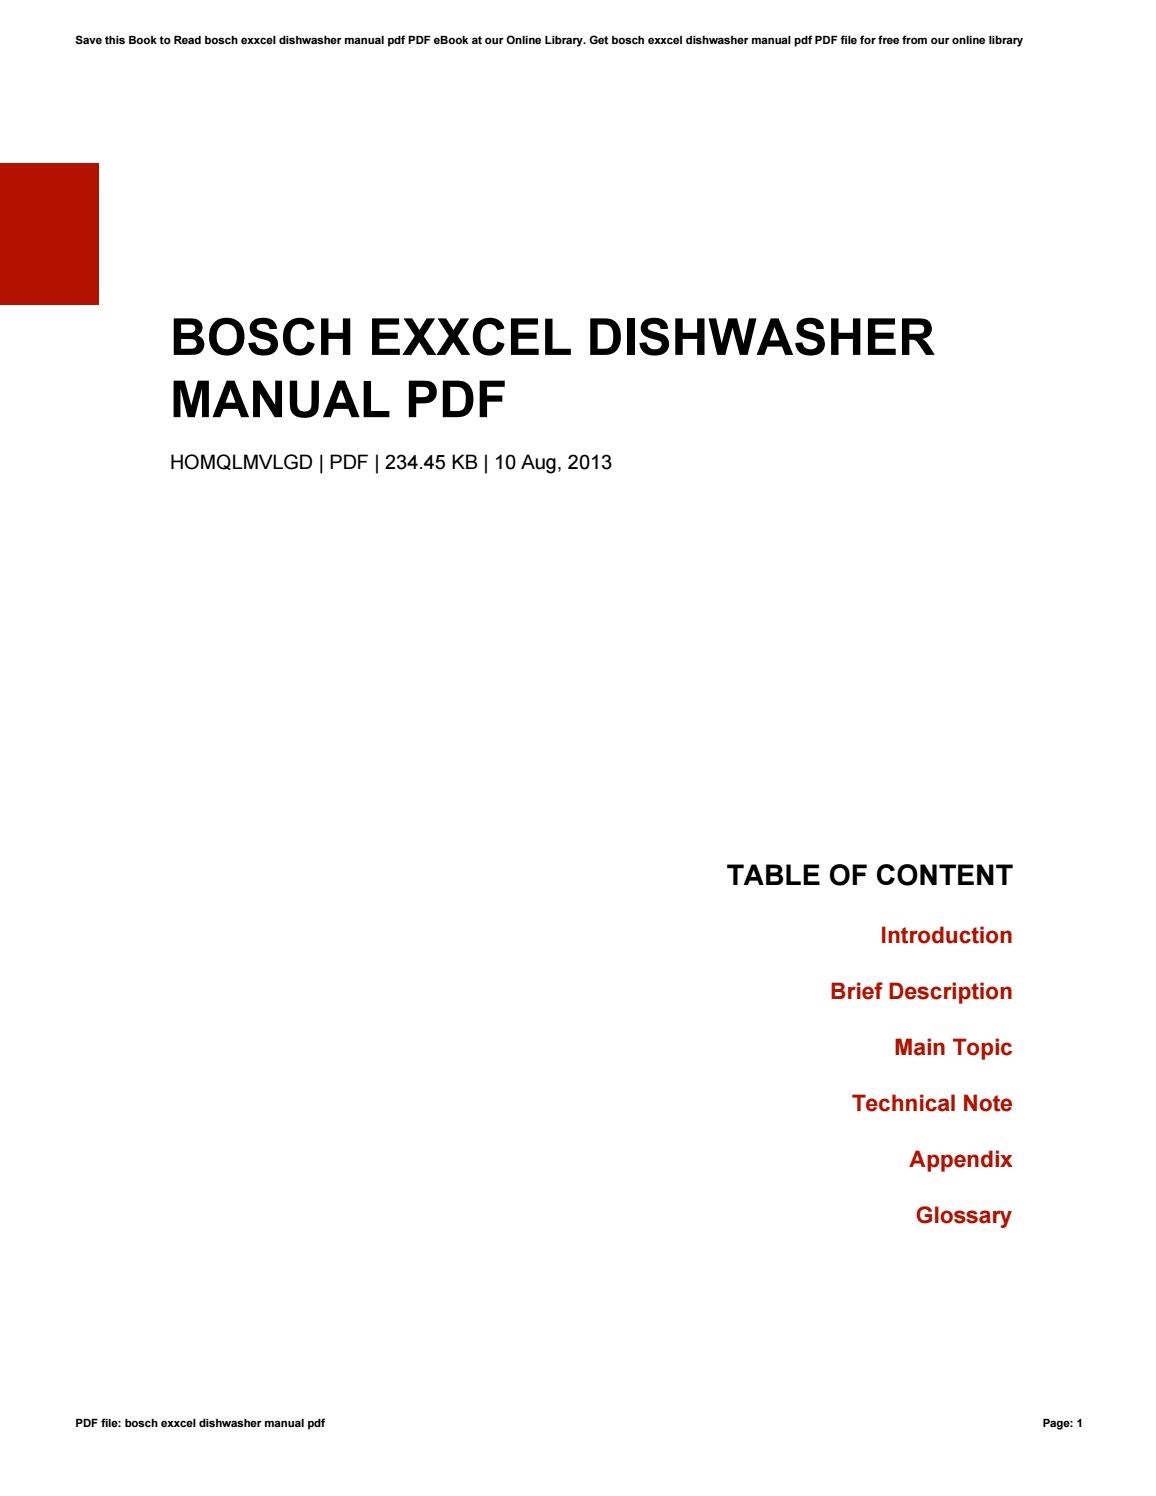 bosch exxcel aquastar dishwasher manual